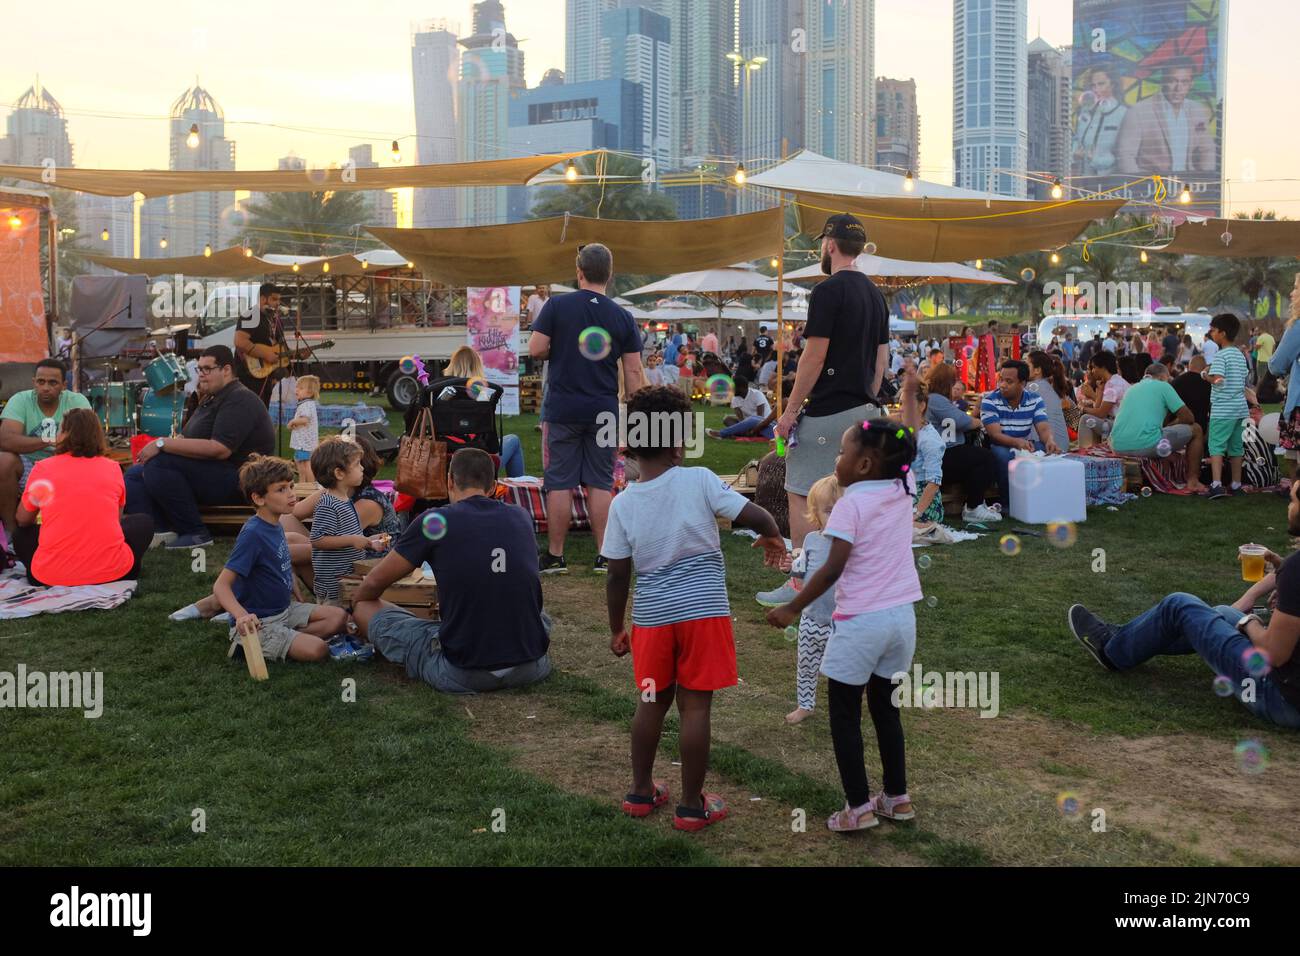 Dubai, Vereinigte Arabische Emirate - 26. März 2016: Beim Food Truck Jam im Emirates Golf Club picknicken verschiedene Menschen auf dem Rasen. Kinder spielen mit Blasen. Stockfoto